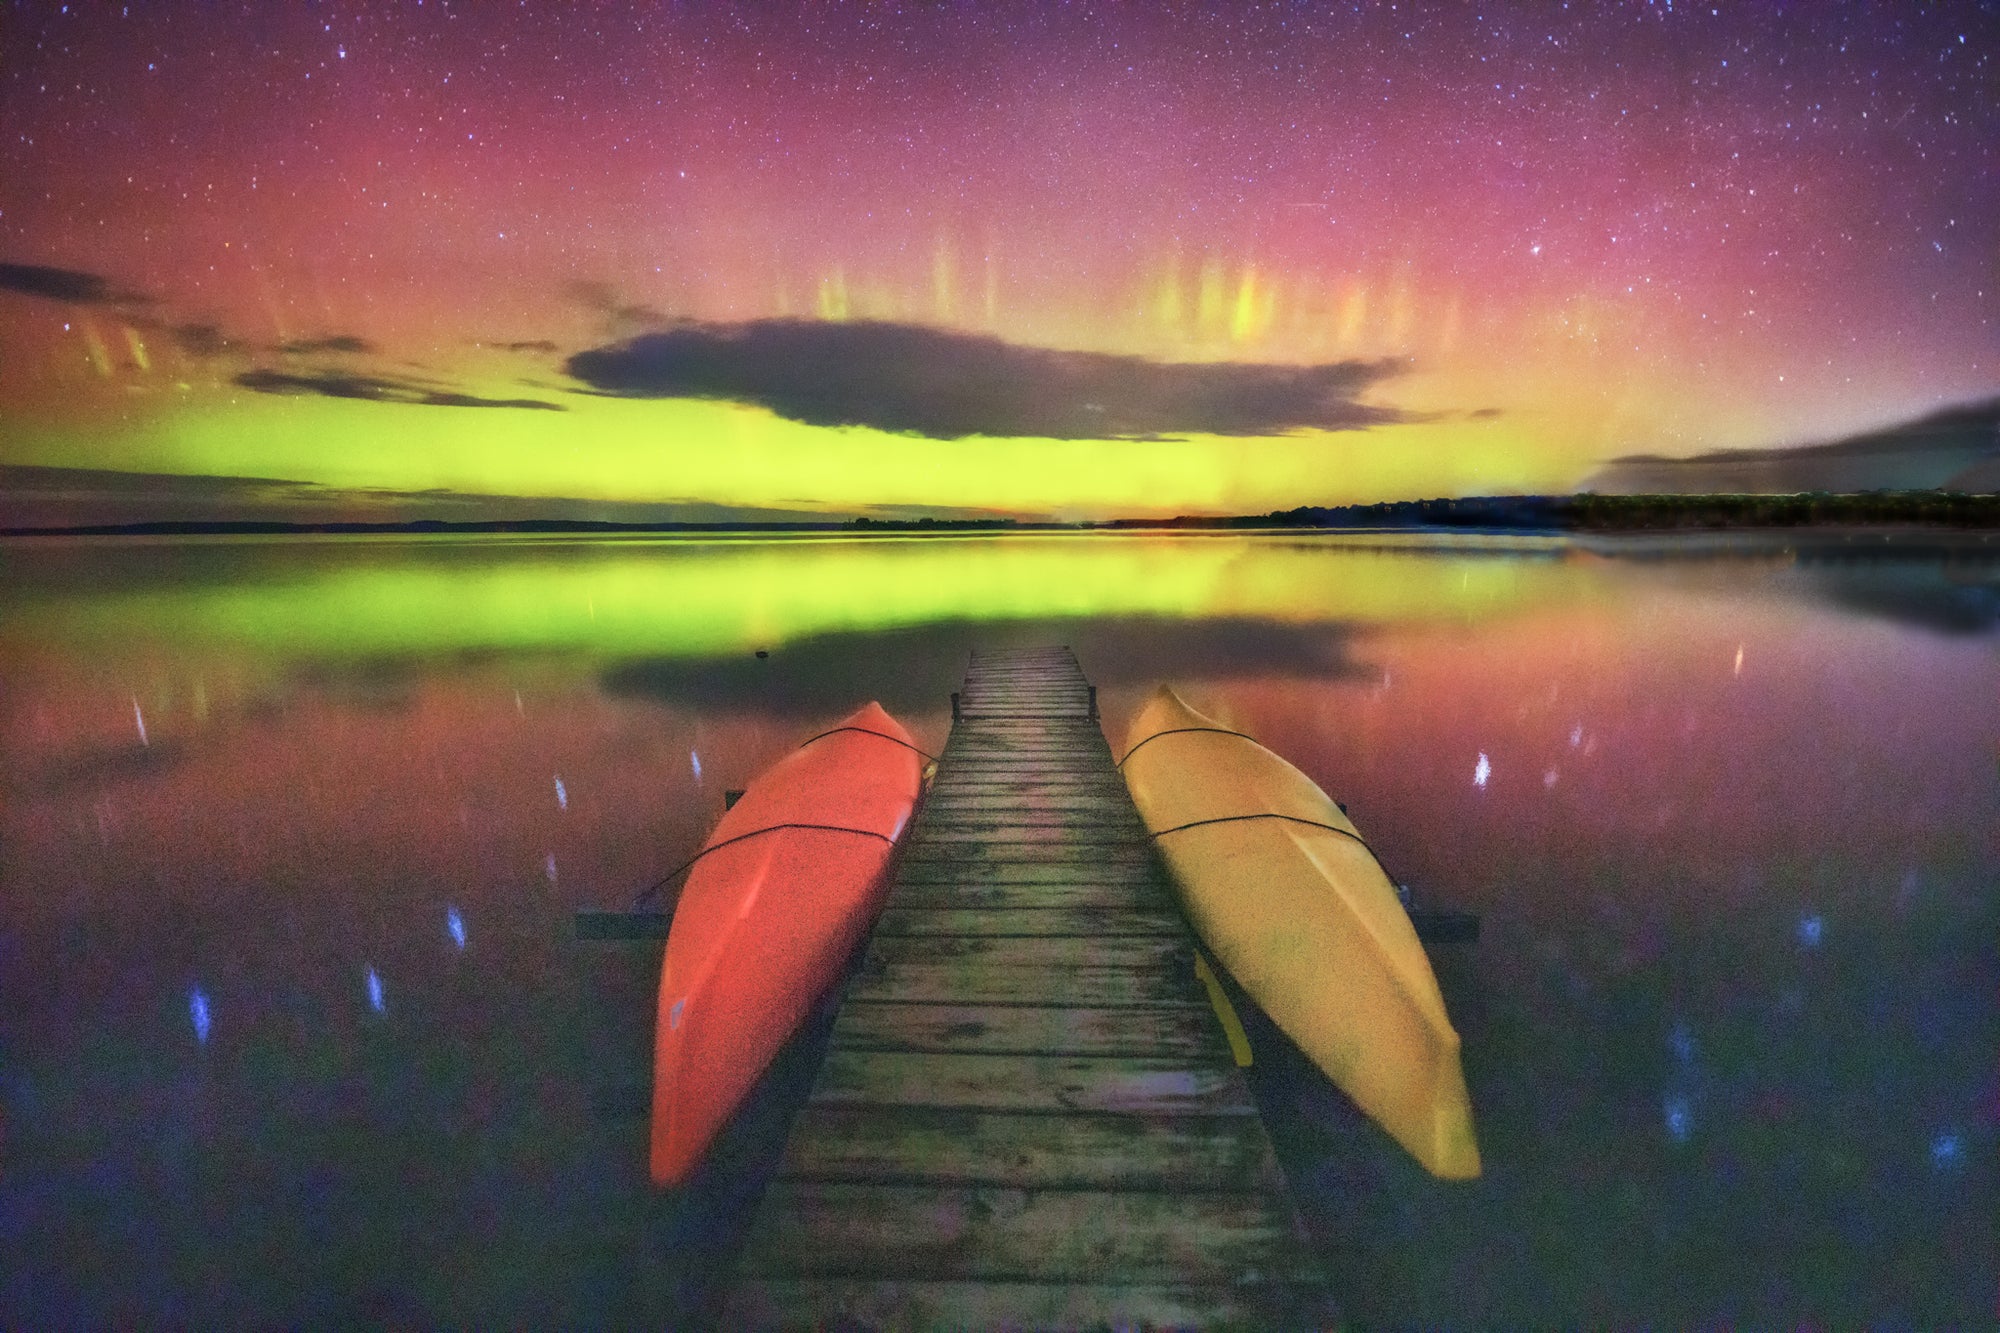 The Night Kayaker